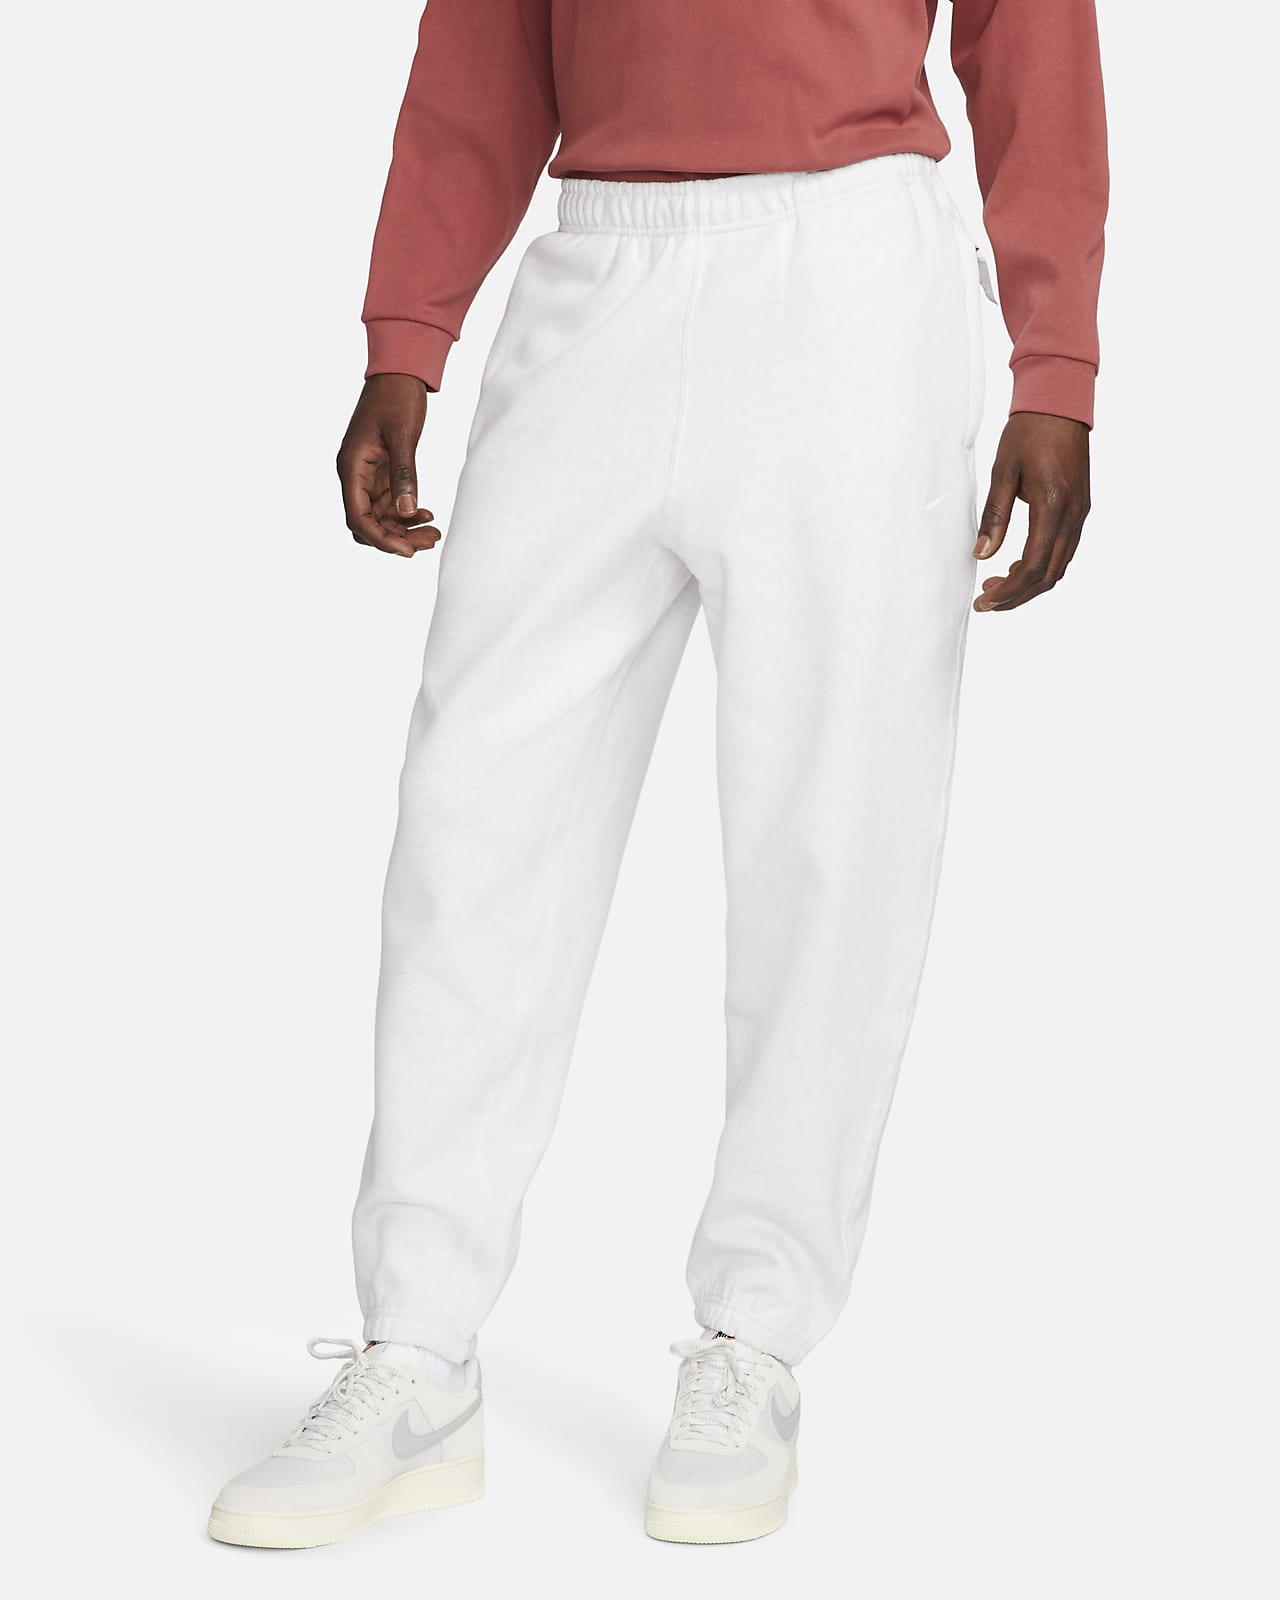 Ανδρικό παντελόνι φλις Nike Solo Swoosh